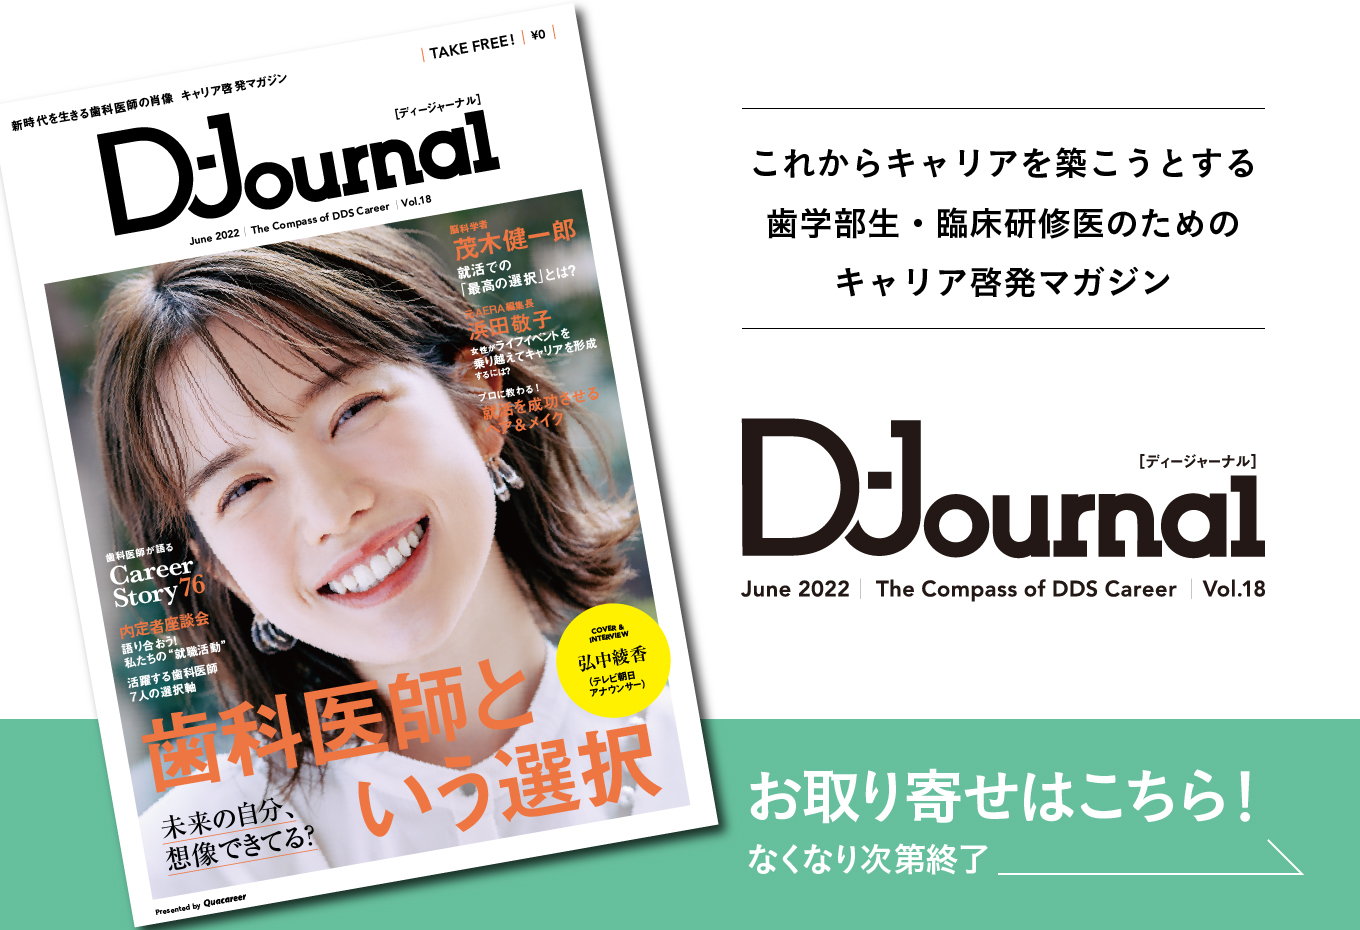 D-Journal[ディージャーナル]Vol.17